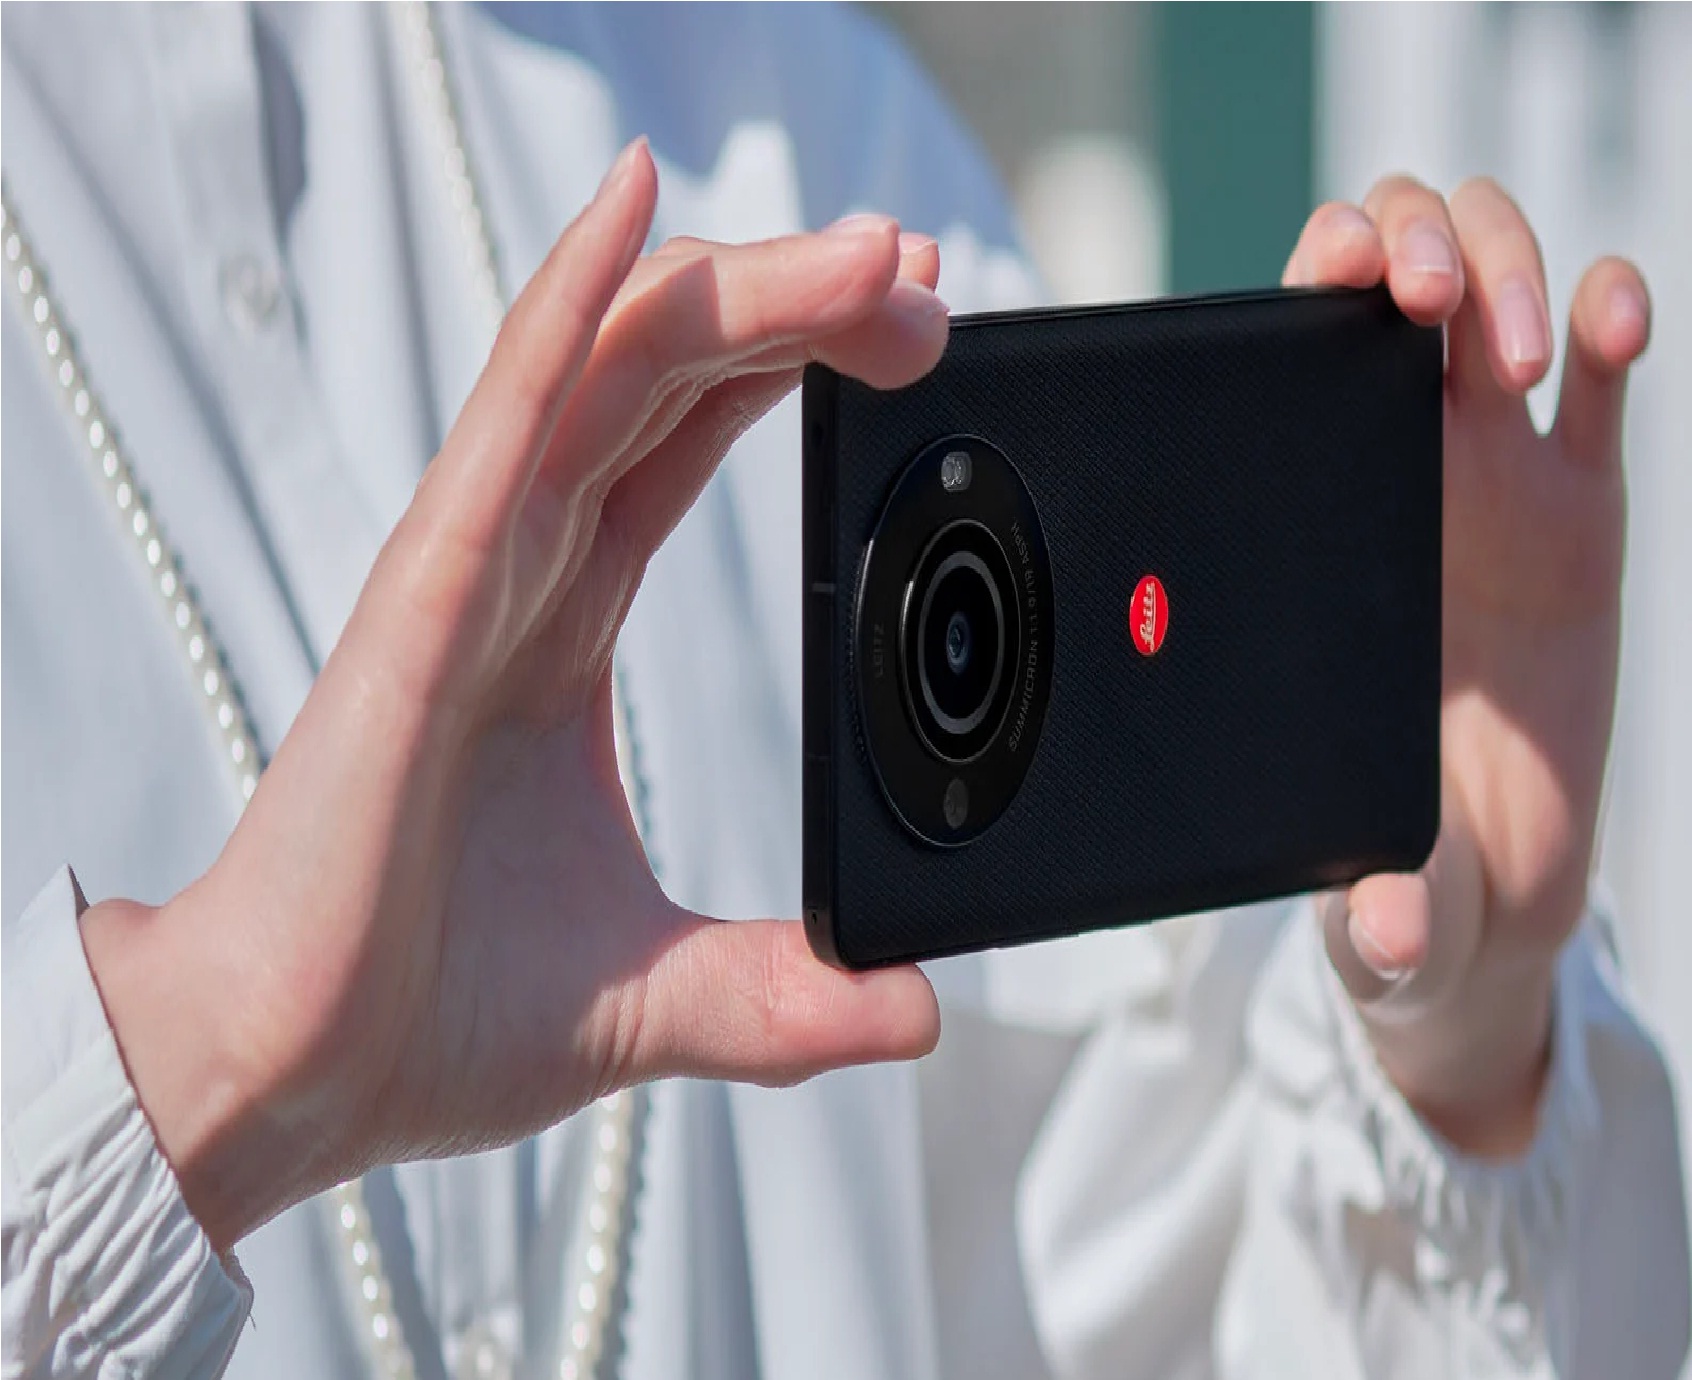 कैमरा कंपनी Leica ने उतारा खुद अपना स्मार्टफोन, 47.2MP का है कैमरा, जानें खूबियां